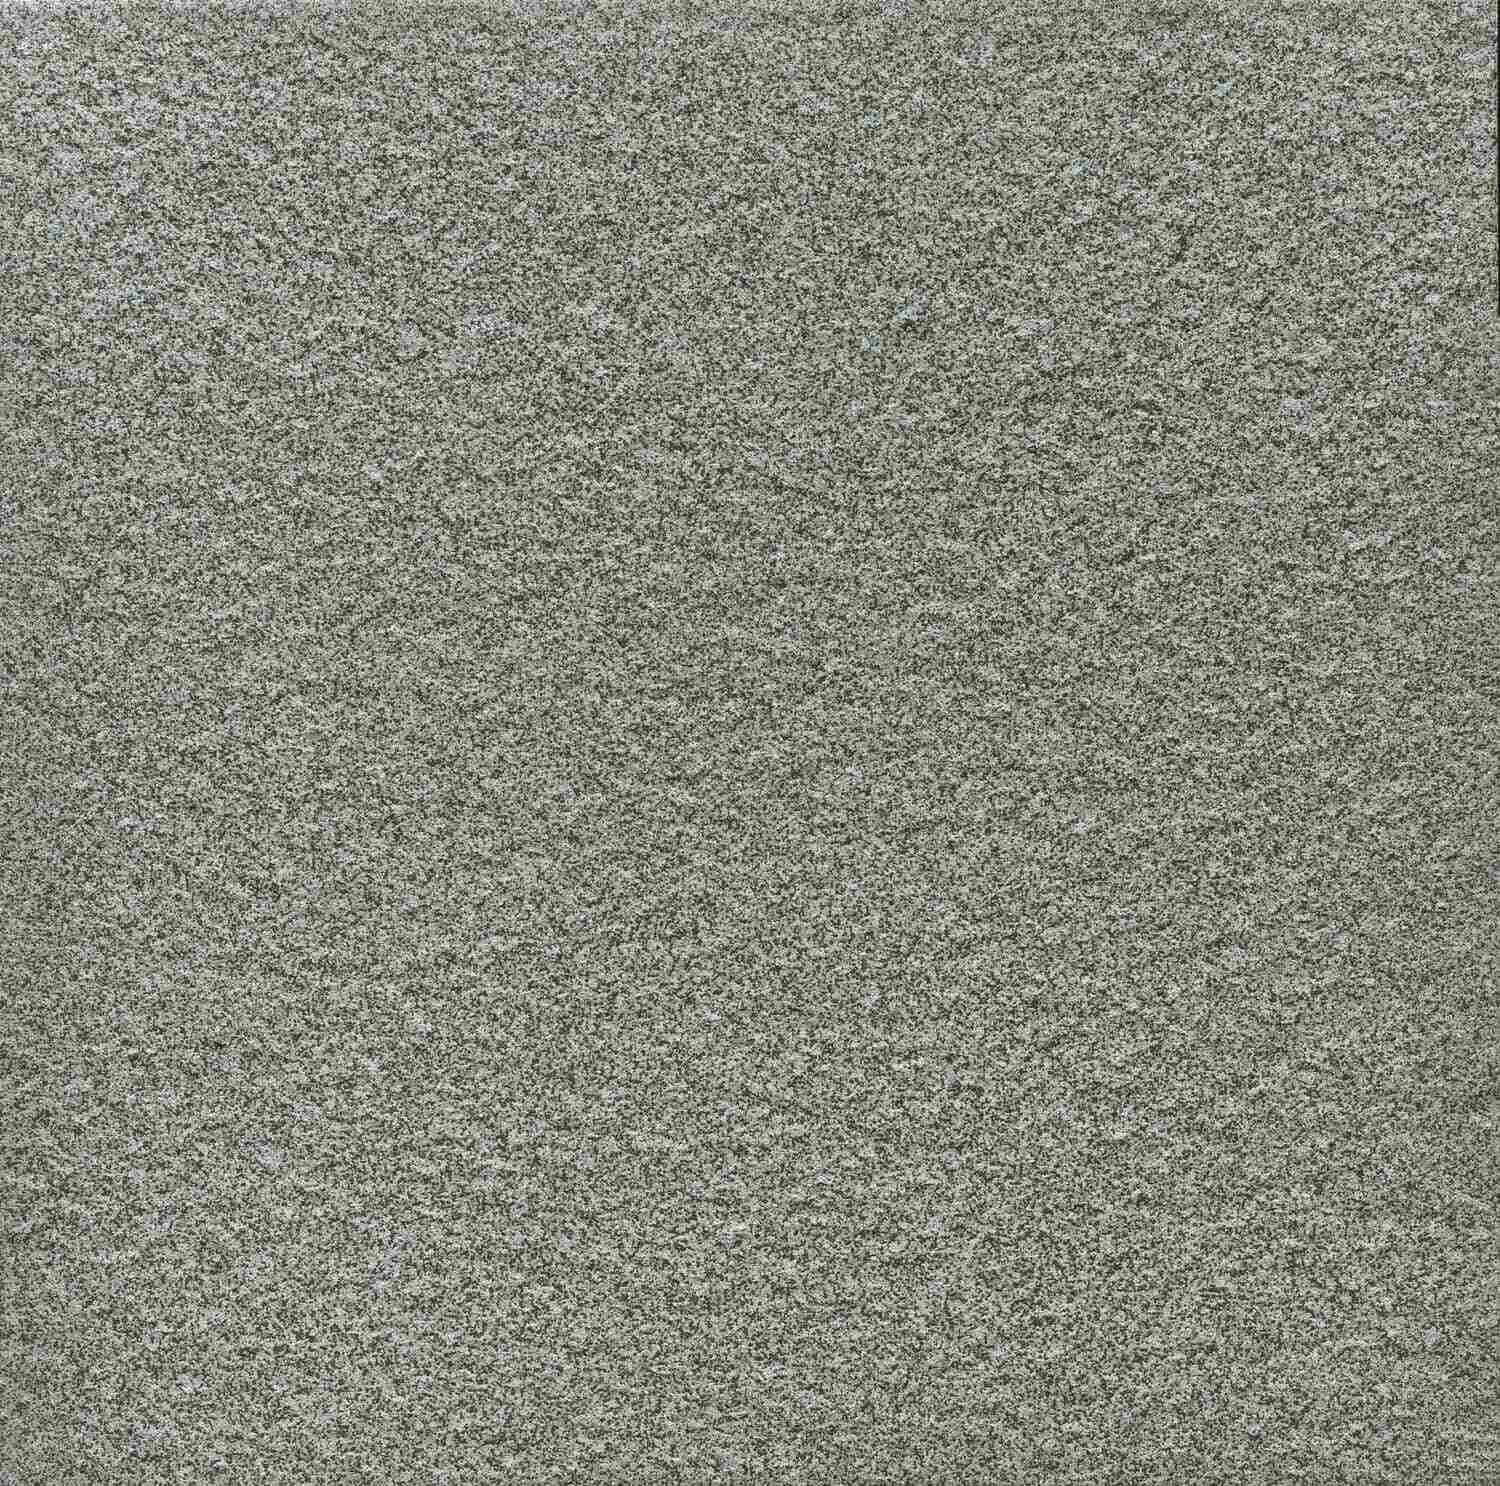 Dorset Woolliscroft Luna Dark Grey Slip Resistant Quarry Tile 300x300mm